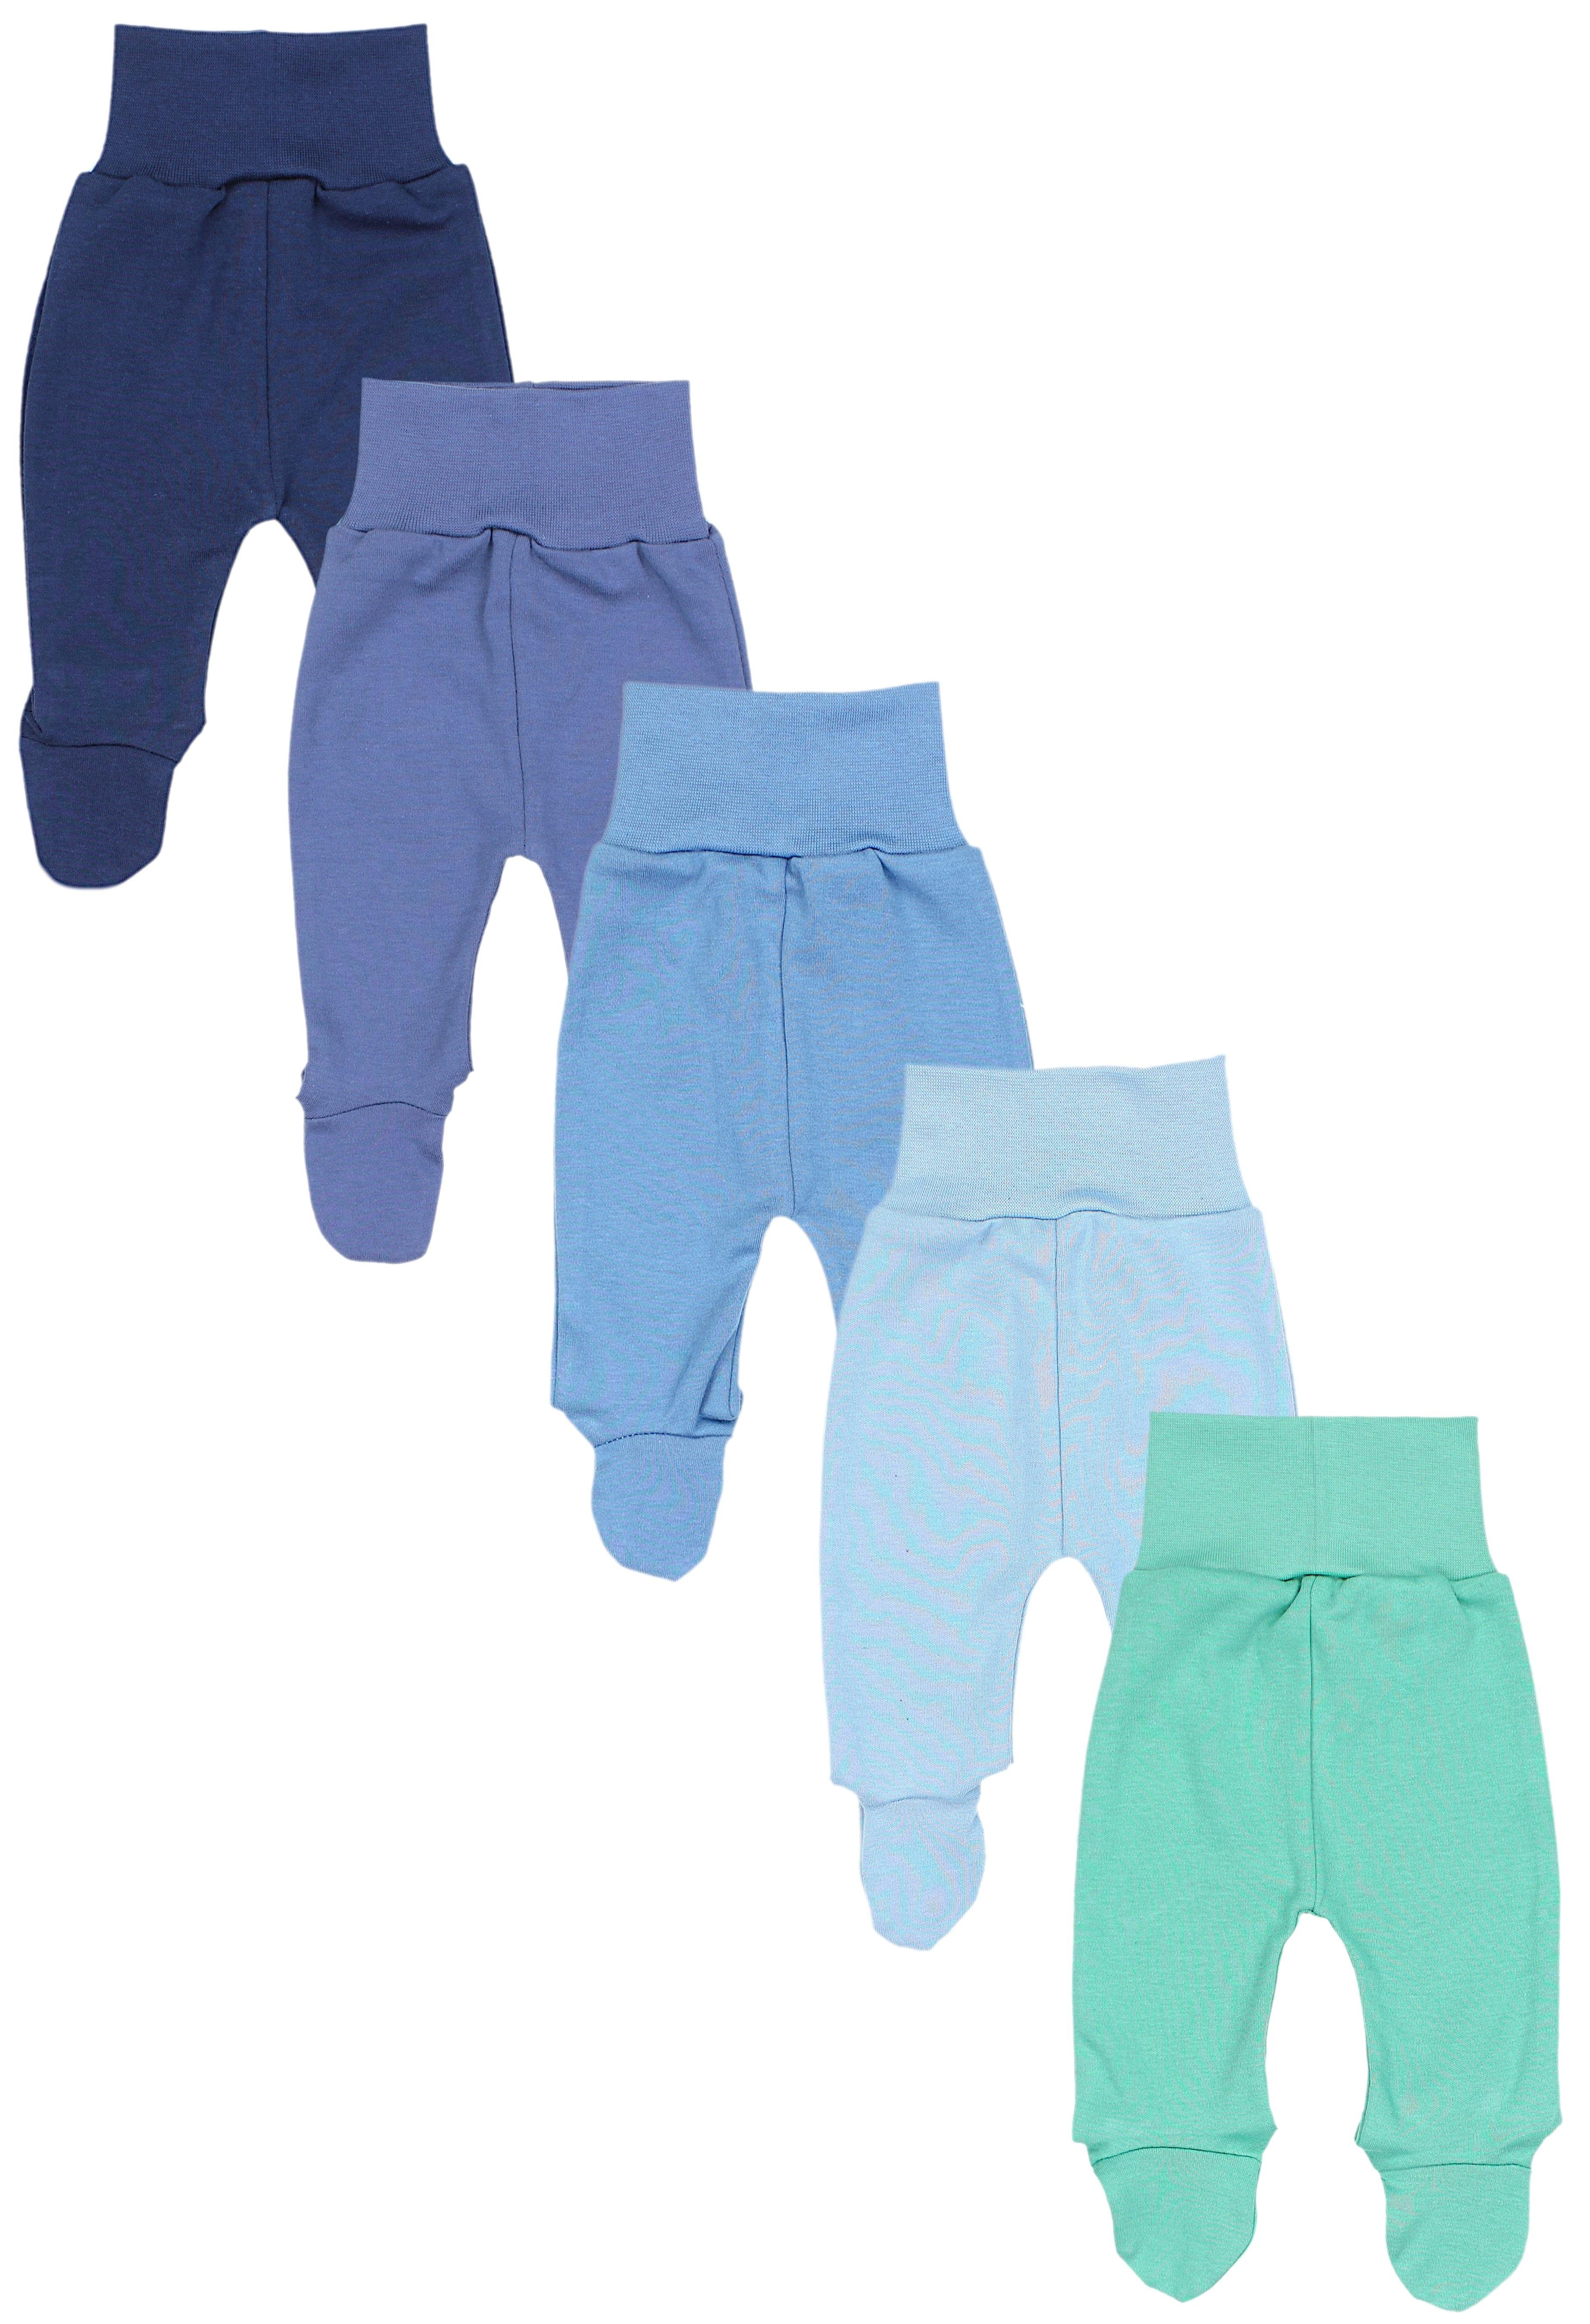 TupTam Schlupfhose TupTam Baby Unisex Hose mit Fuß Bunte 5er Pack Dunkelblau Jeans Blau Mintgrün